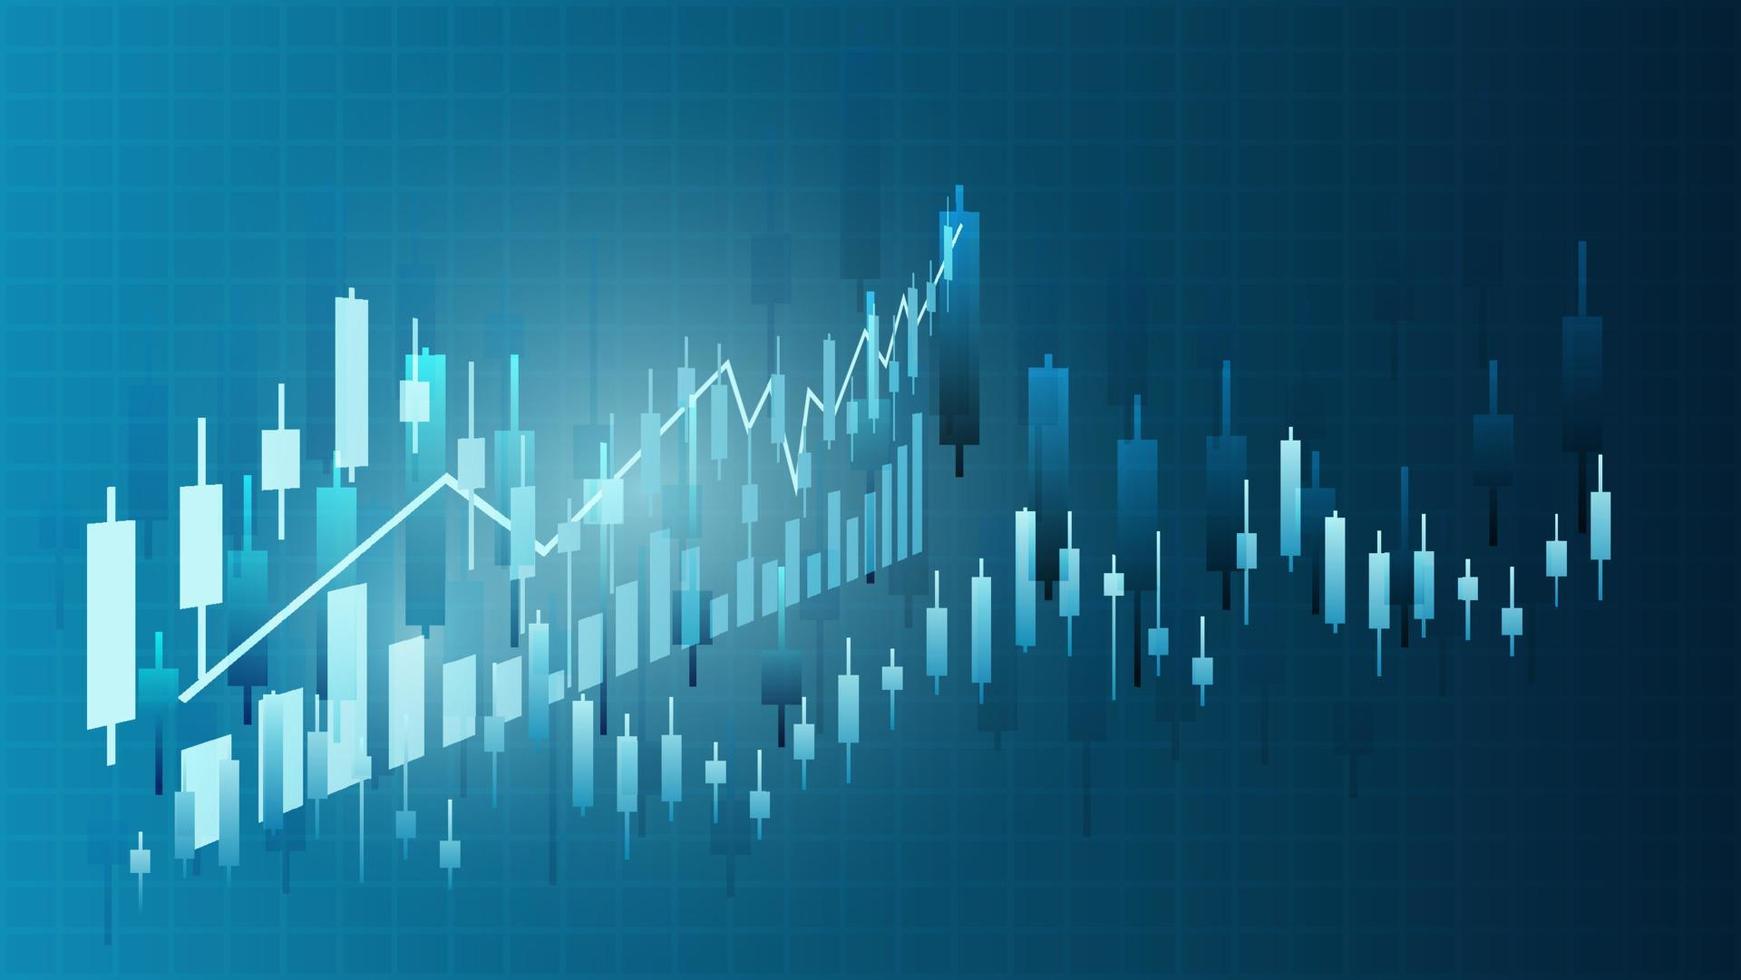 ljusstake med stapeldiagram och linjeindikator visar aktiekurs eller finansiell investeringsvinst. affärsplanering management bakgrund koncept vektor